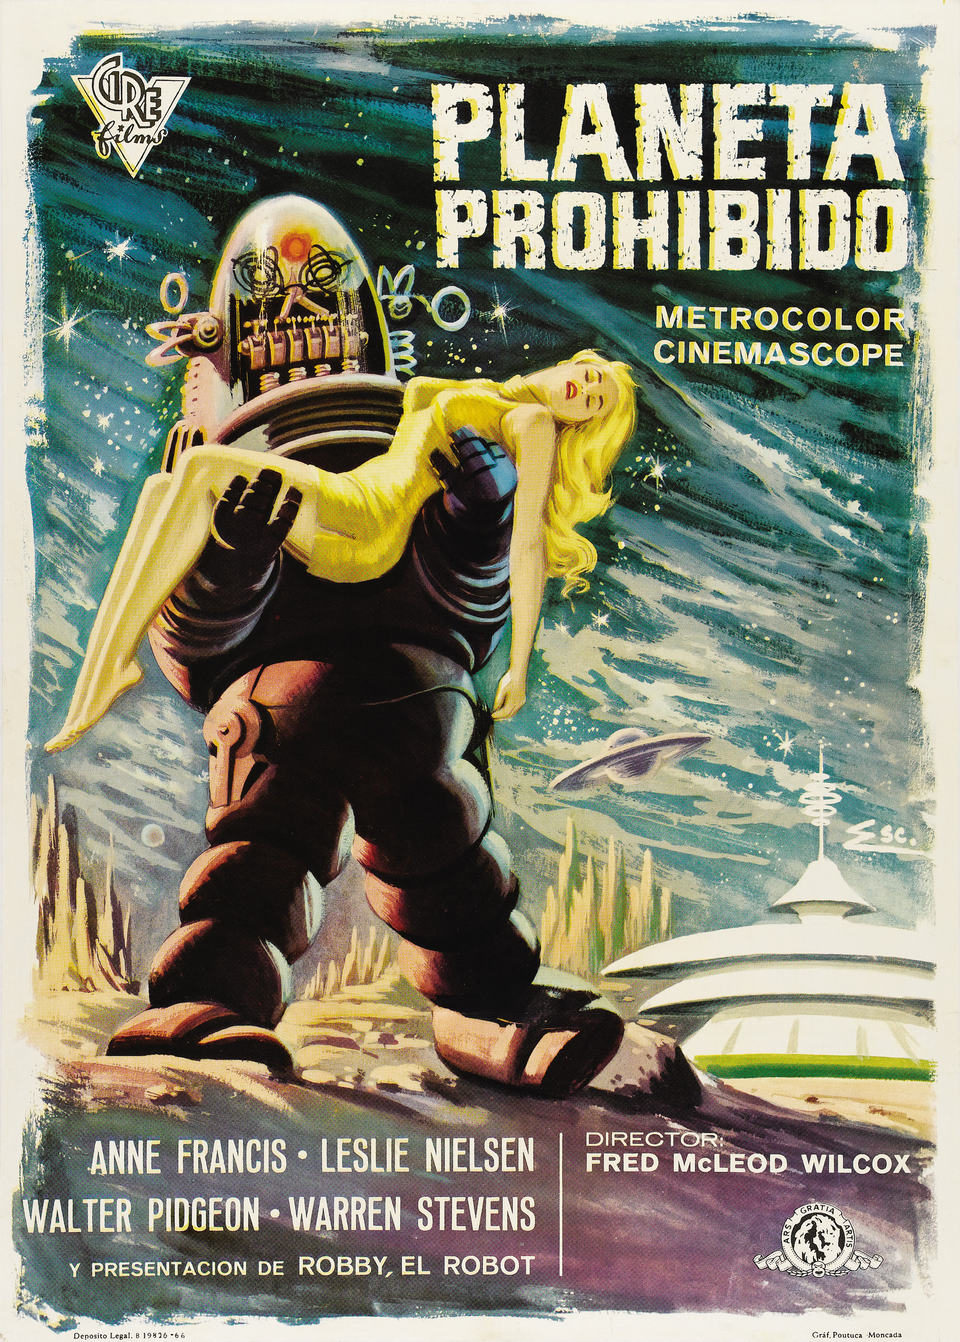 Poster of Forbidden Planet - España